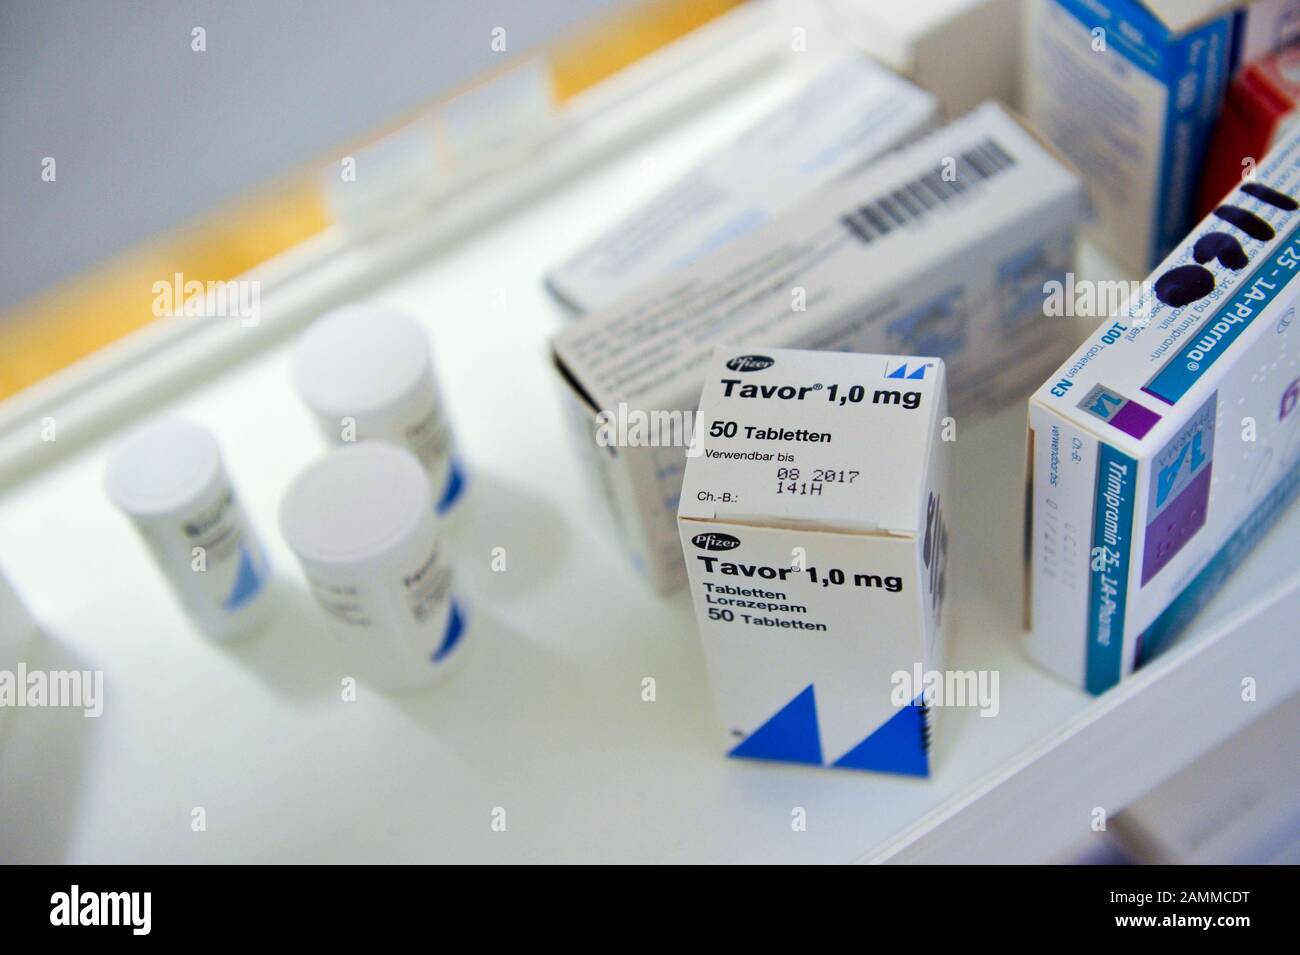 Verschiedene Medikamente in einem Medizinstabinett im  Kbo-Isar-Amper-Klinikum Atriumhaus in München. [Automatisierte Übersetzung]  Stockfotografie - Alamy